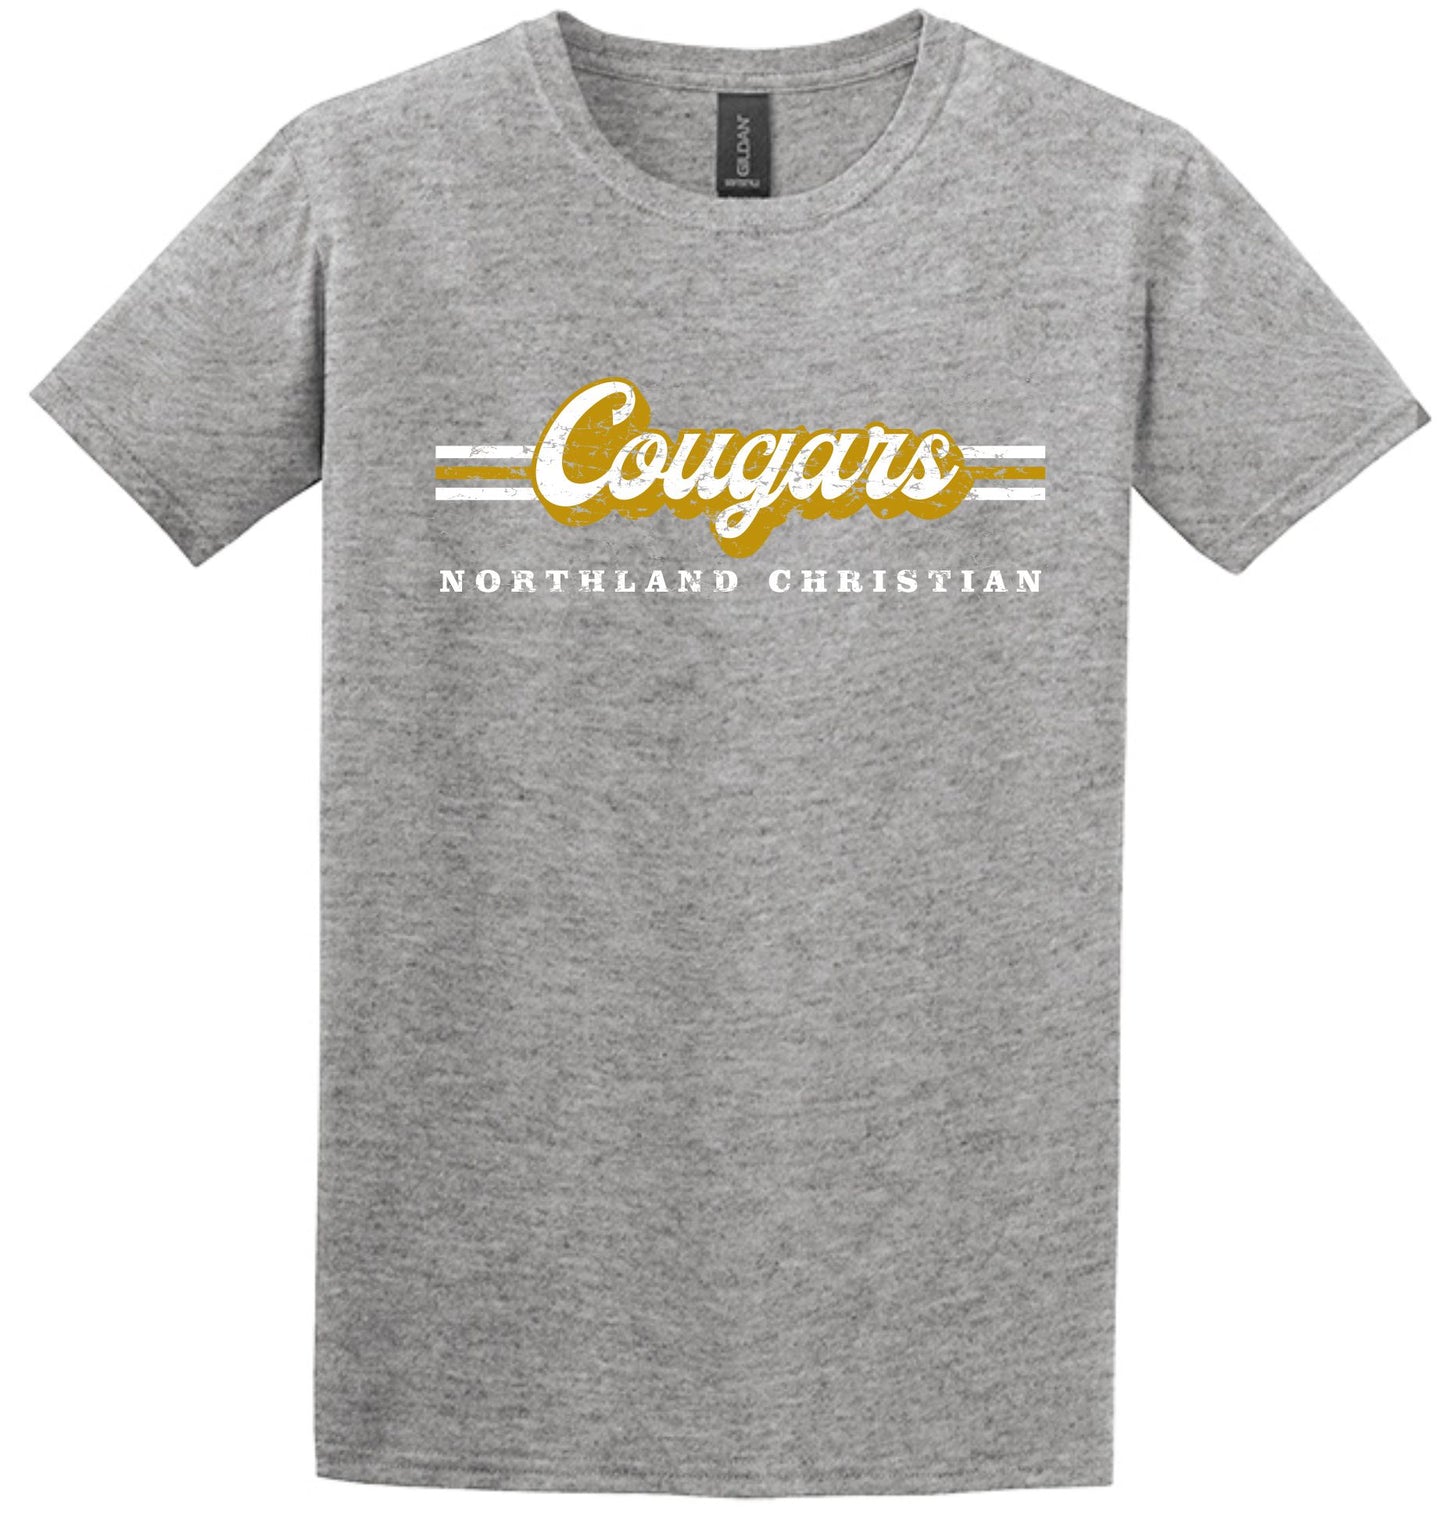 NC Cougars T Shirt - Grey